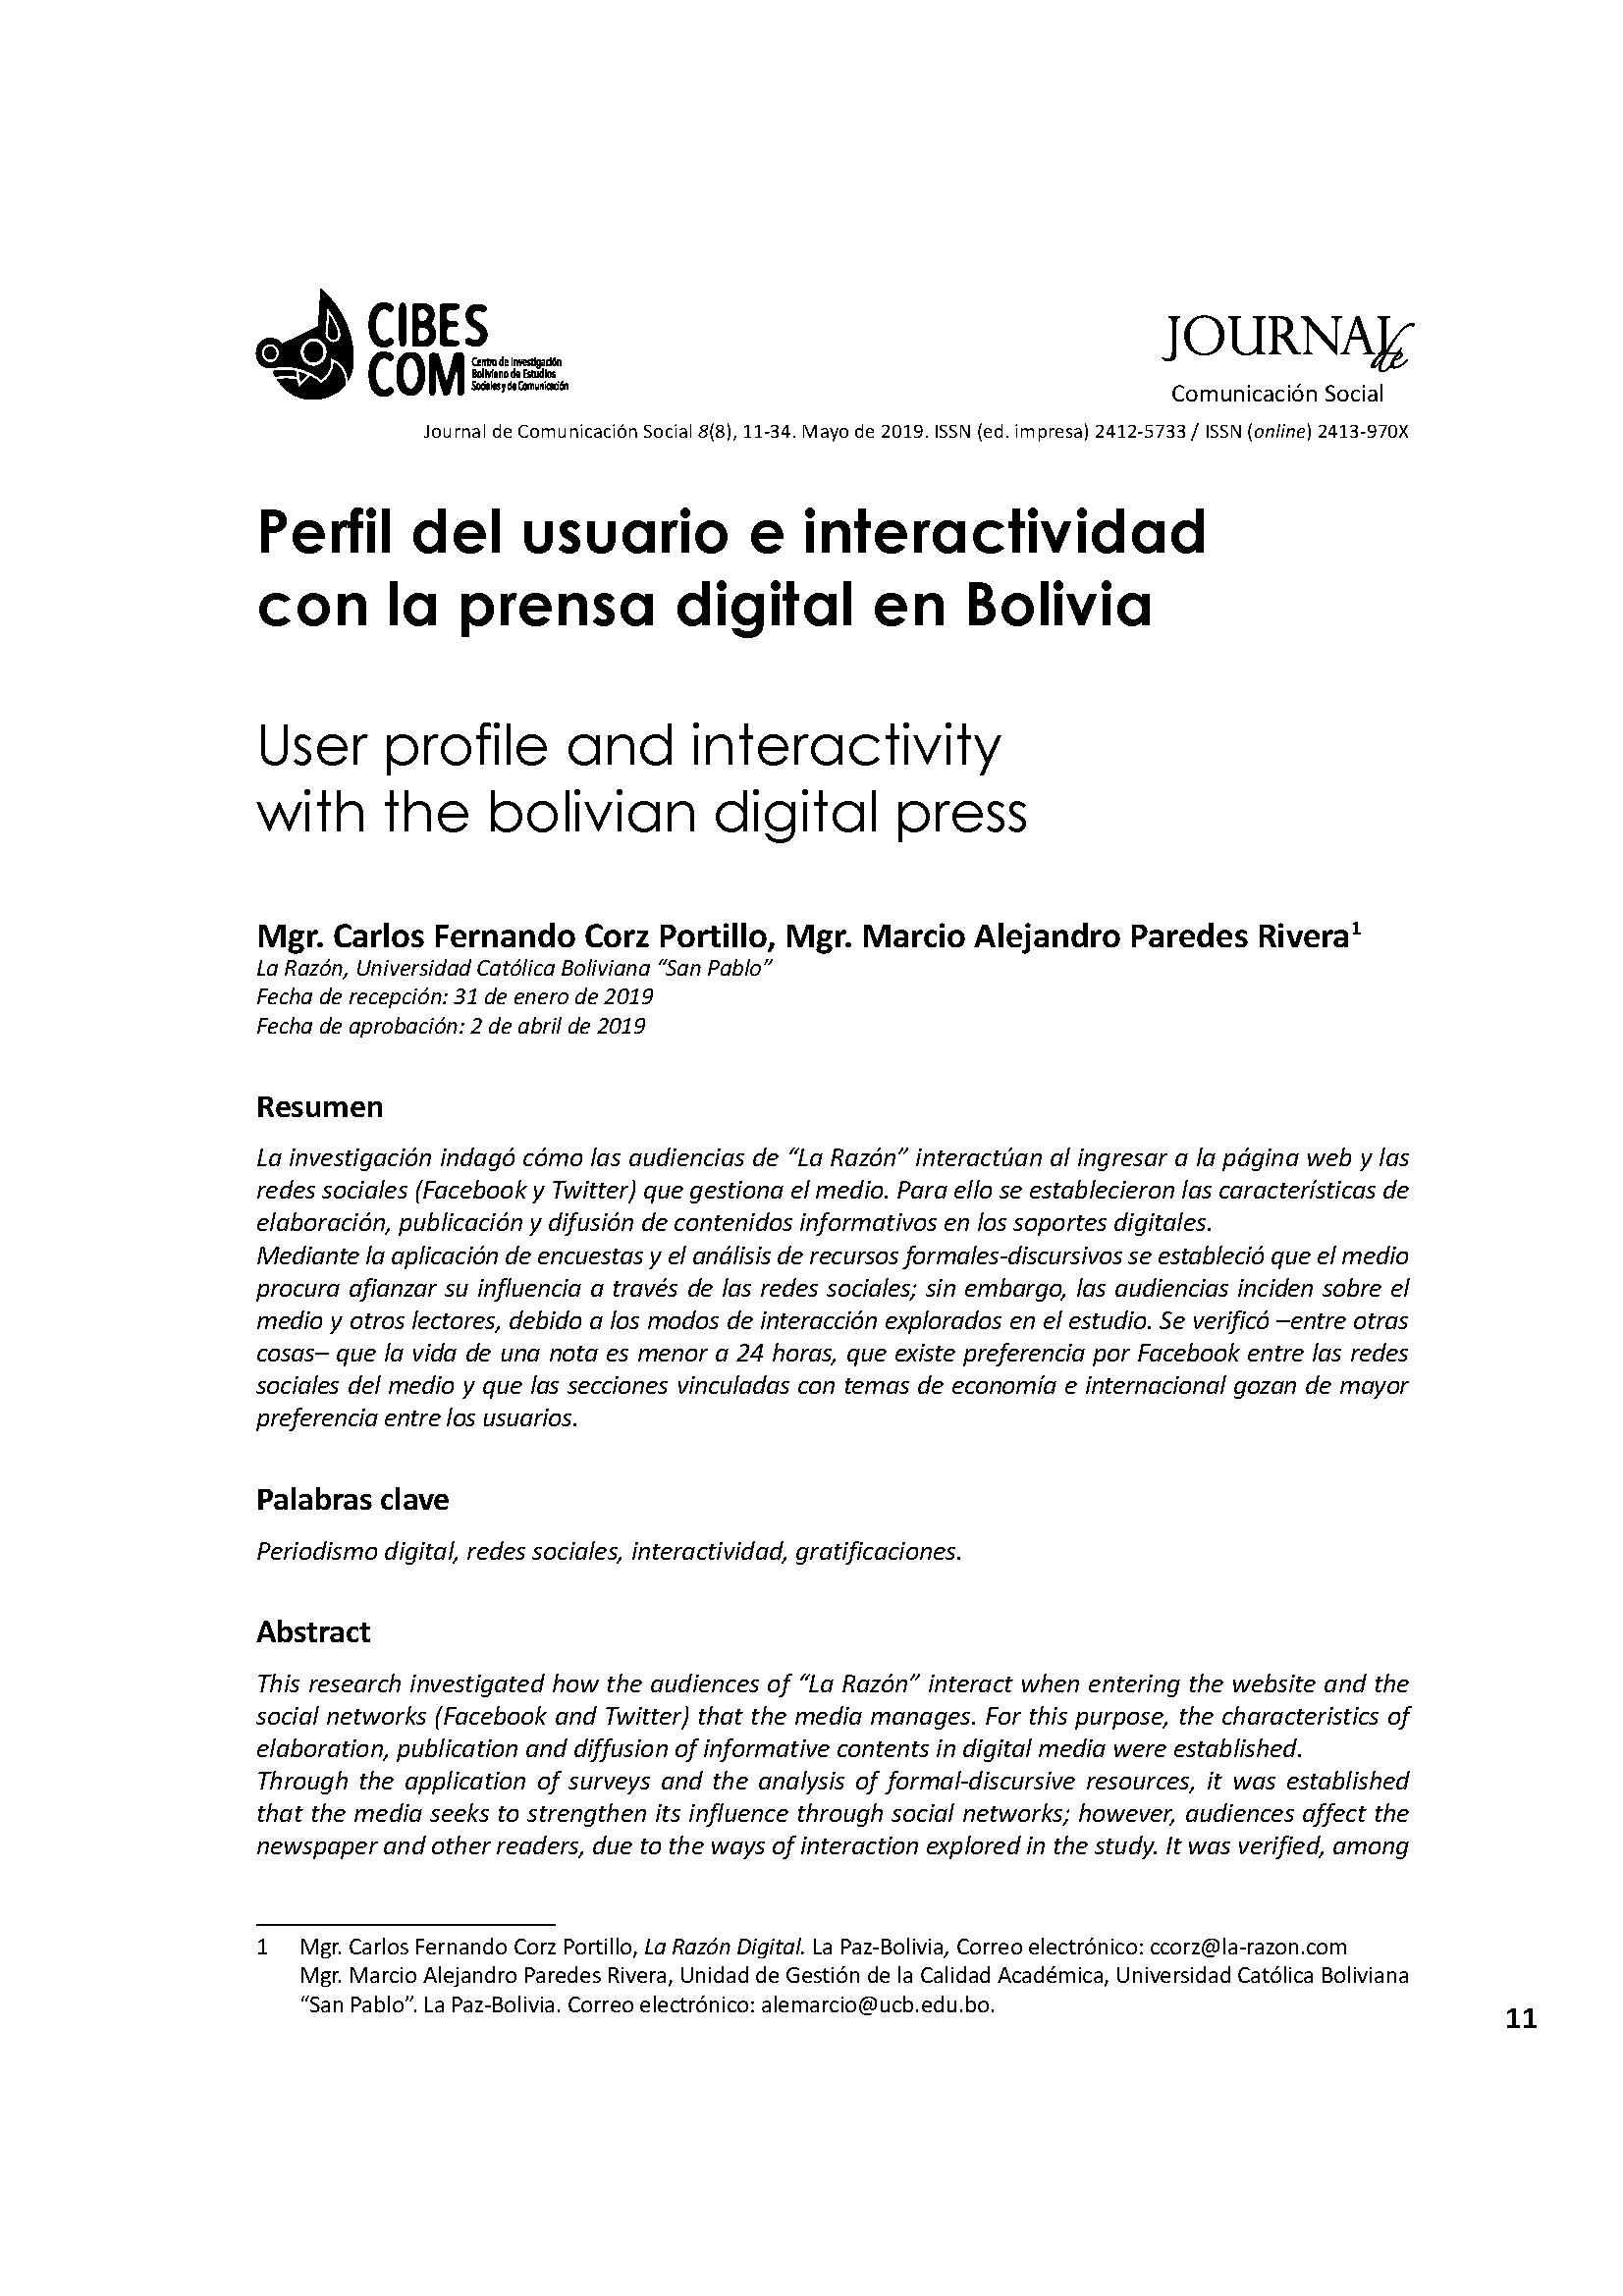 Perfil del usuario e interactividad con la prensa digital en Bolivia